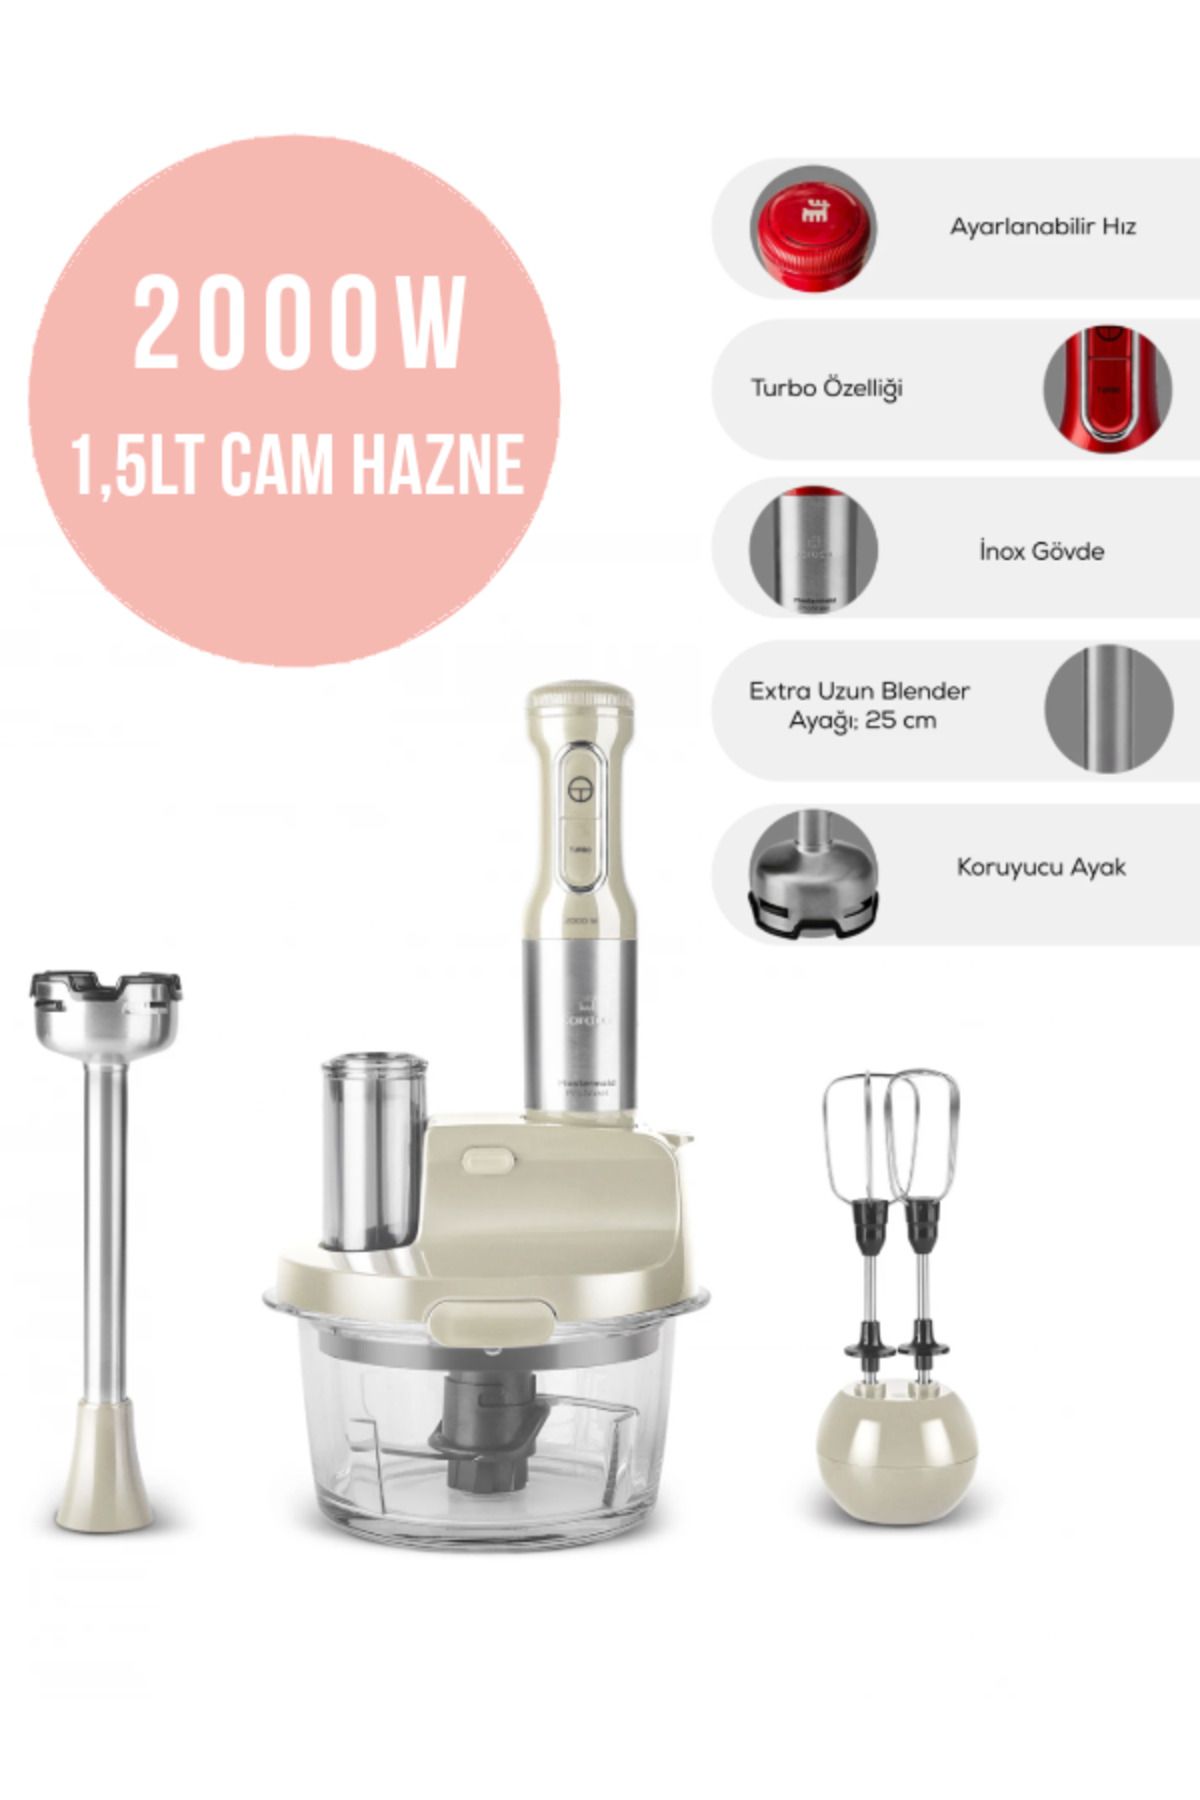 Karaca Inox Gövde Premium 2000w Turbo 1,5 Lt Cam Hazneli, 4 Kanatlı Çelik Bıçak Mutfak Robotu & Blender